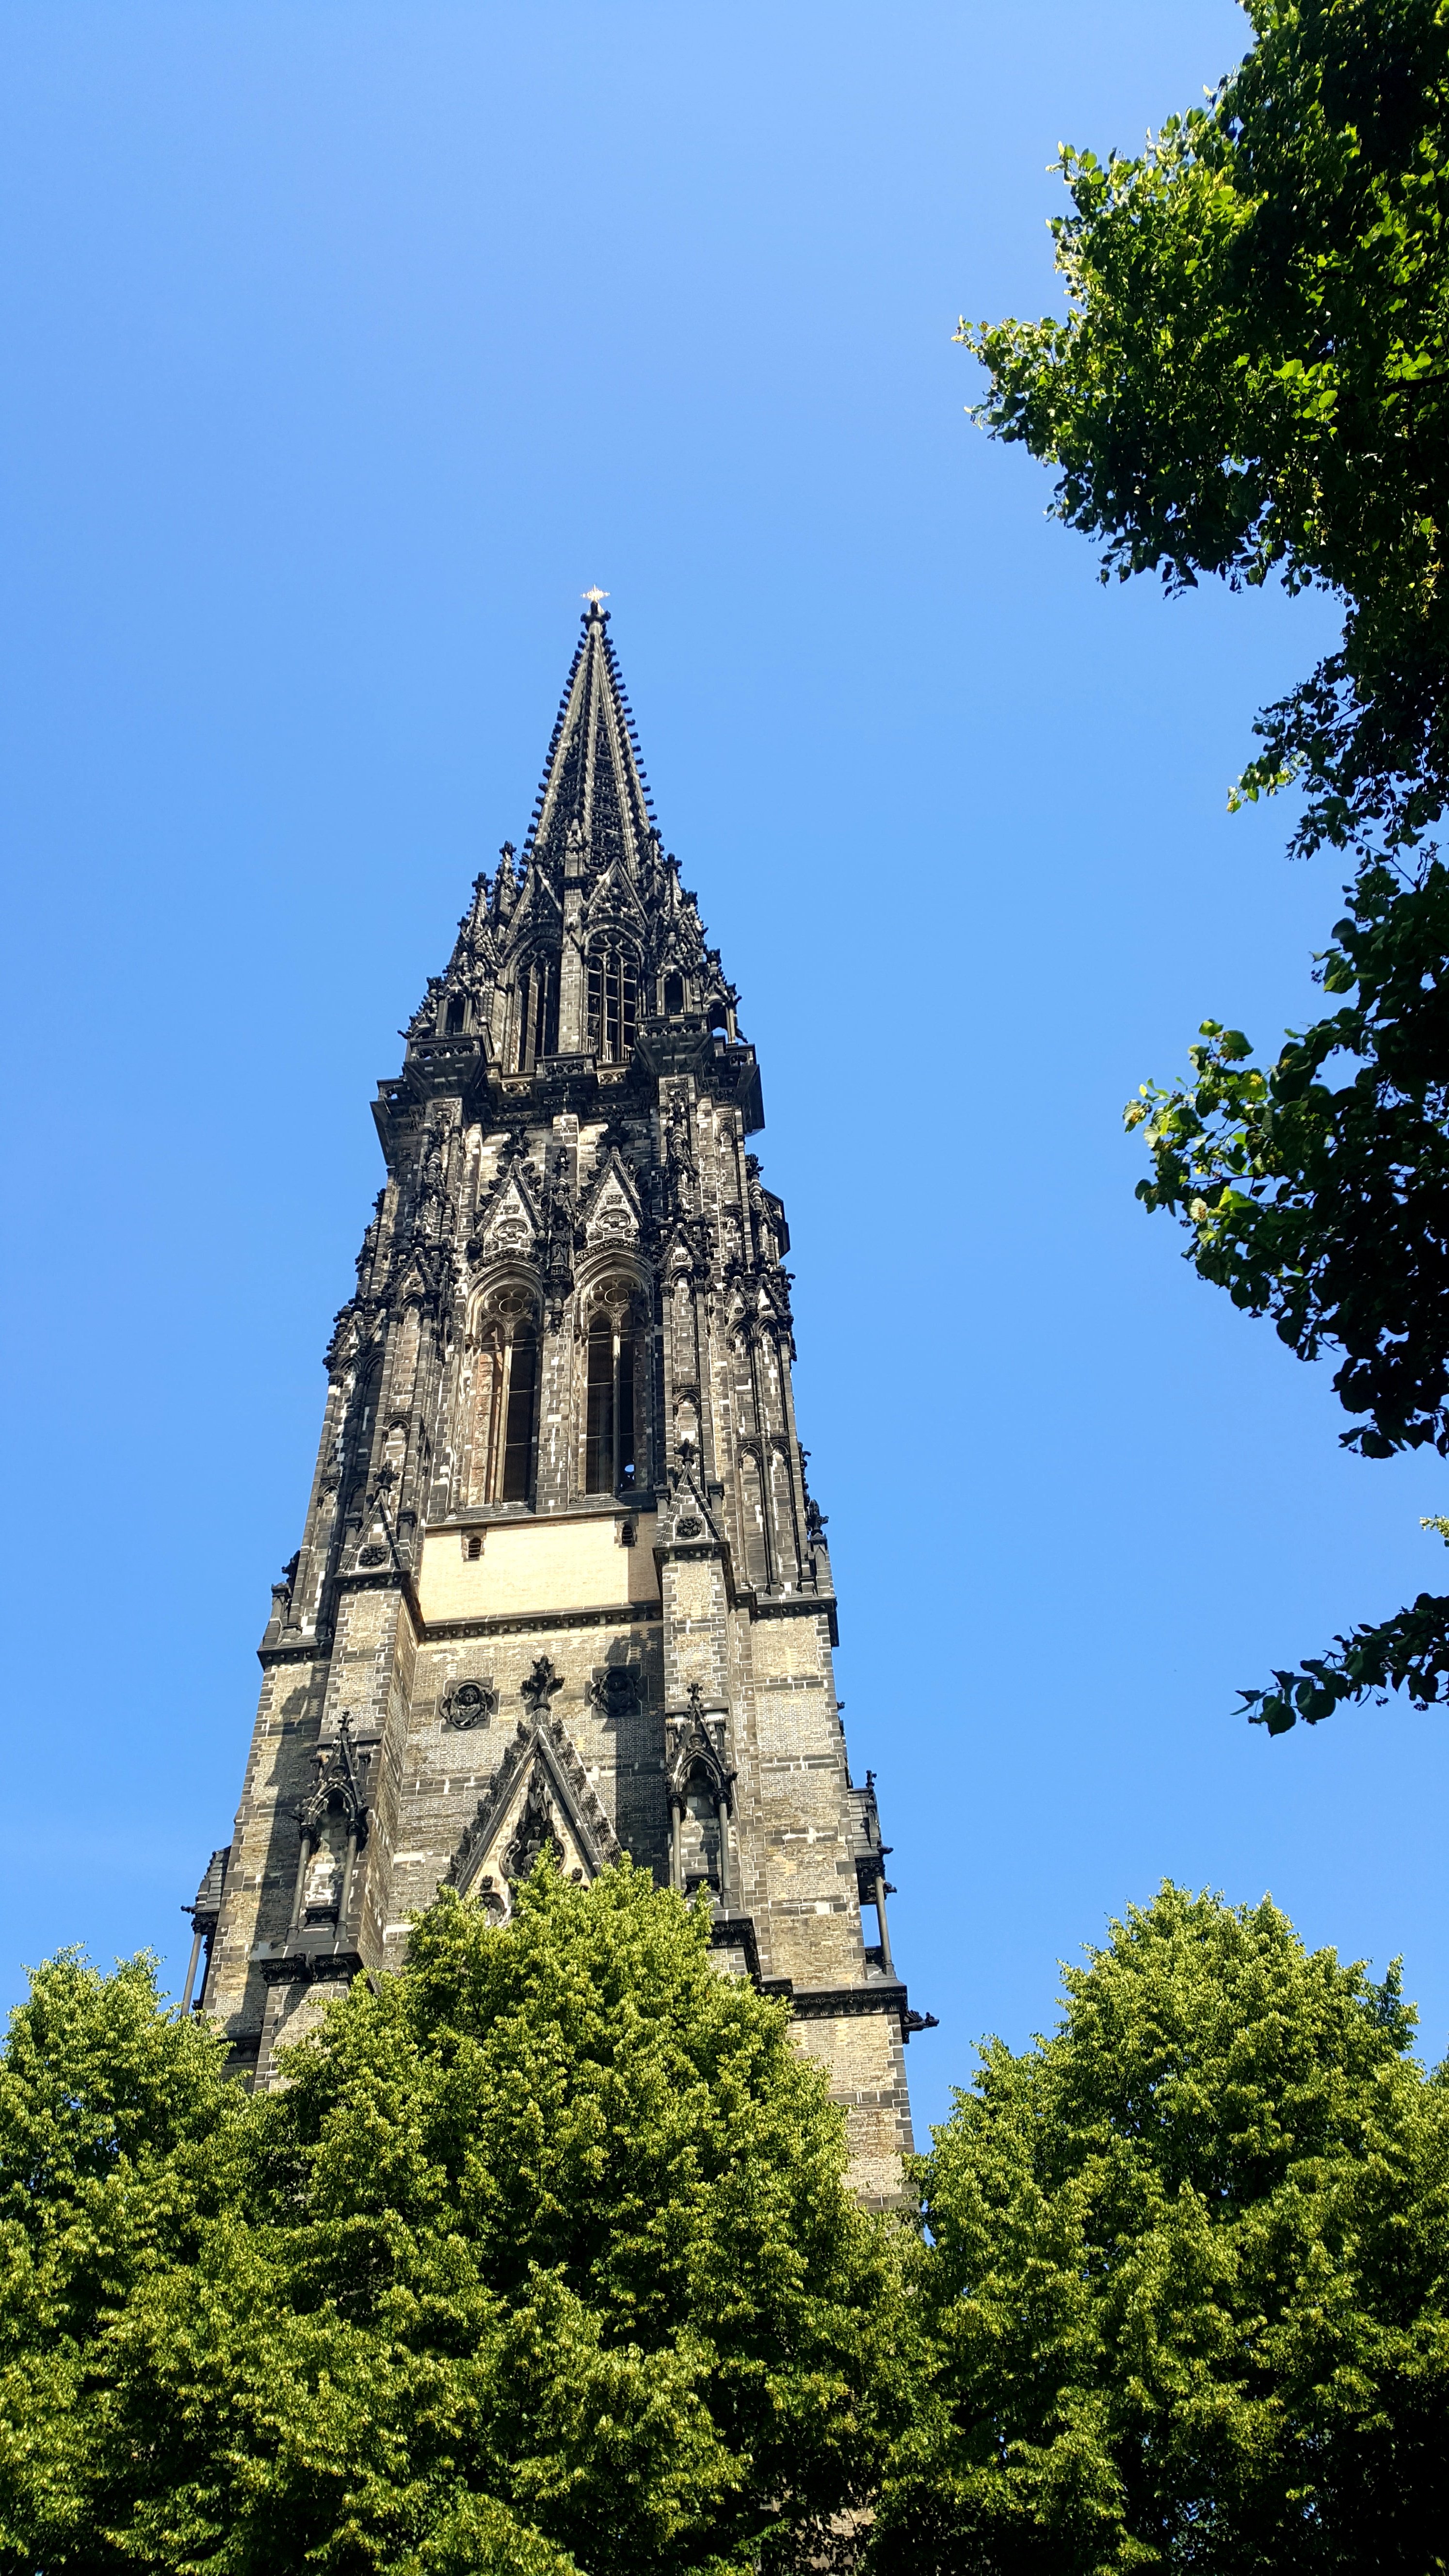 Nikolaikirche in Hamburg